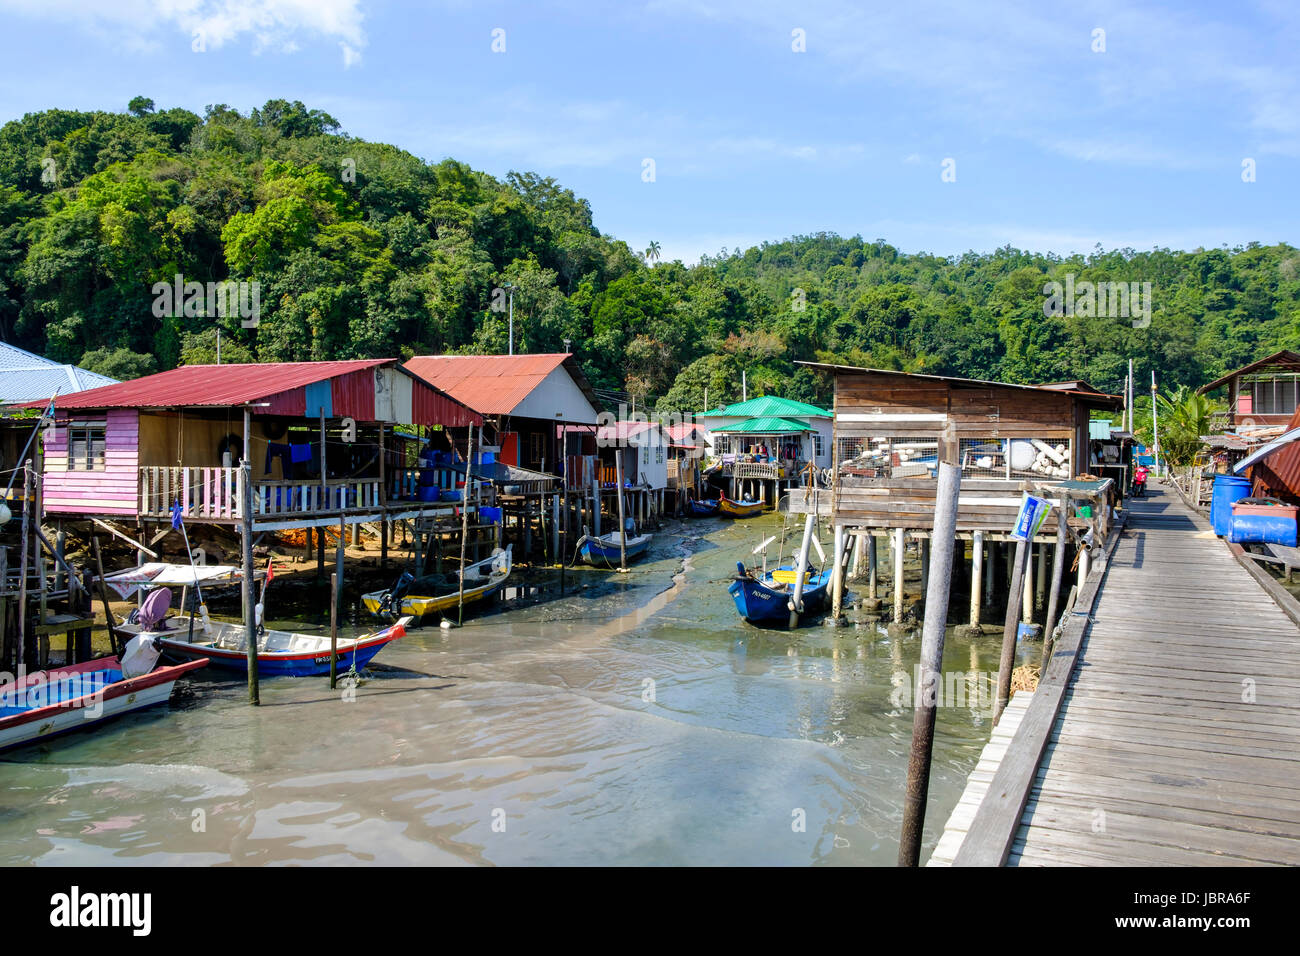 Maisons sur pilotis, des bateaux de pêche et de la jetée dans un village de pêcheurs sur l'île de Pangkor (Pulau Pangkor, Malaisie). Banque D'Images